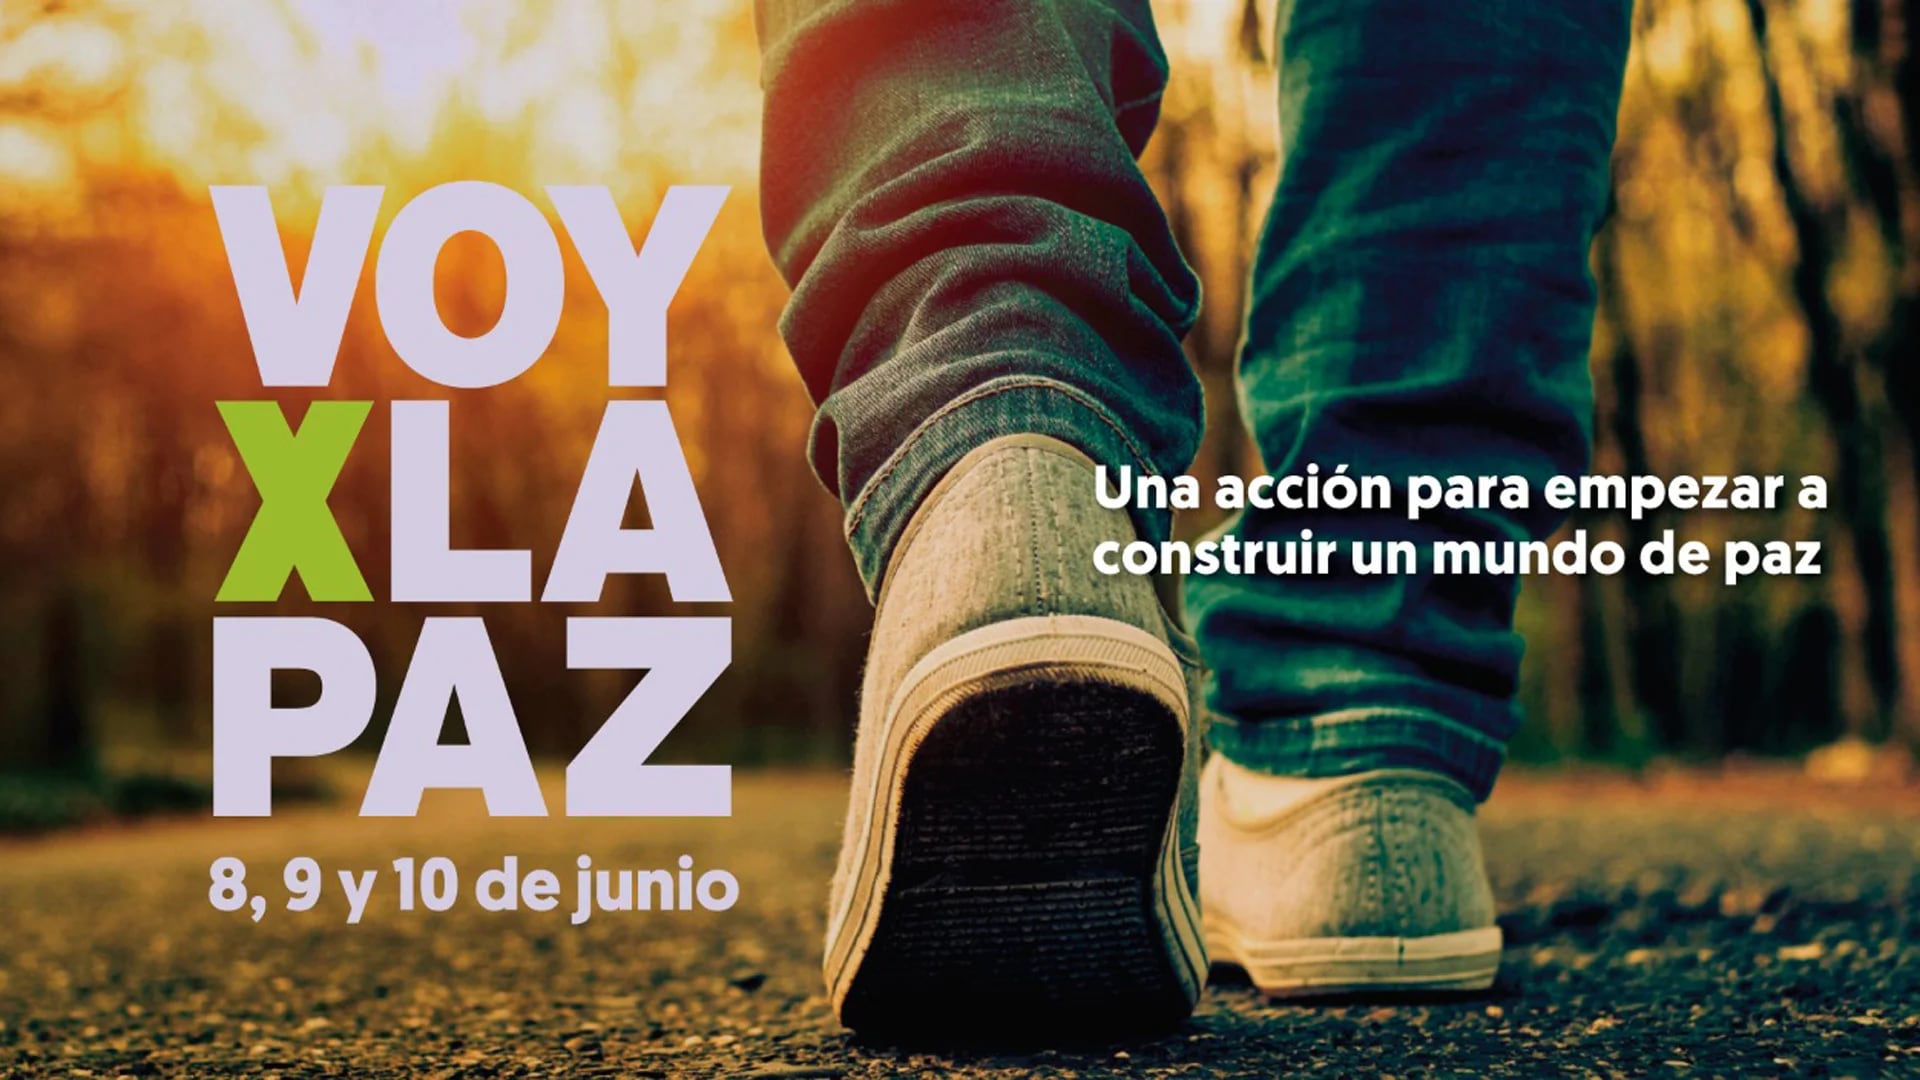 La acción social #VoyXLaPaz se celebrará en Rosario con la presencia de destacados expositores